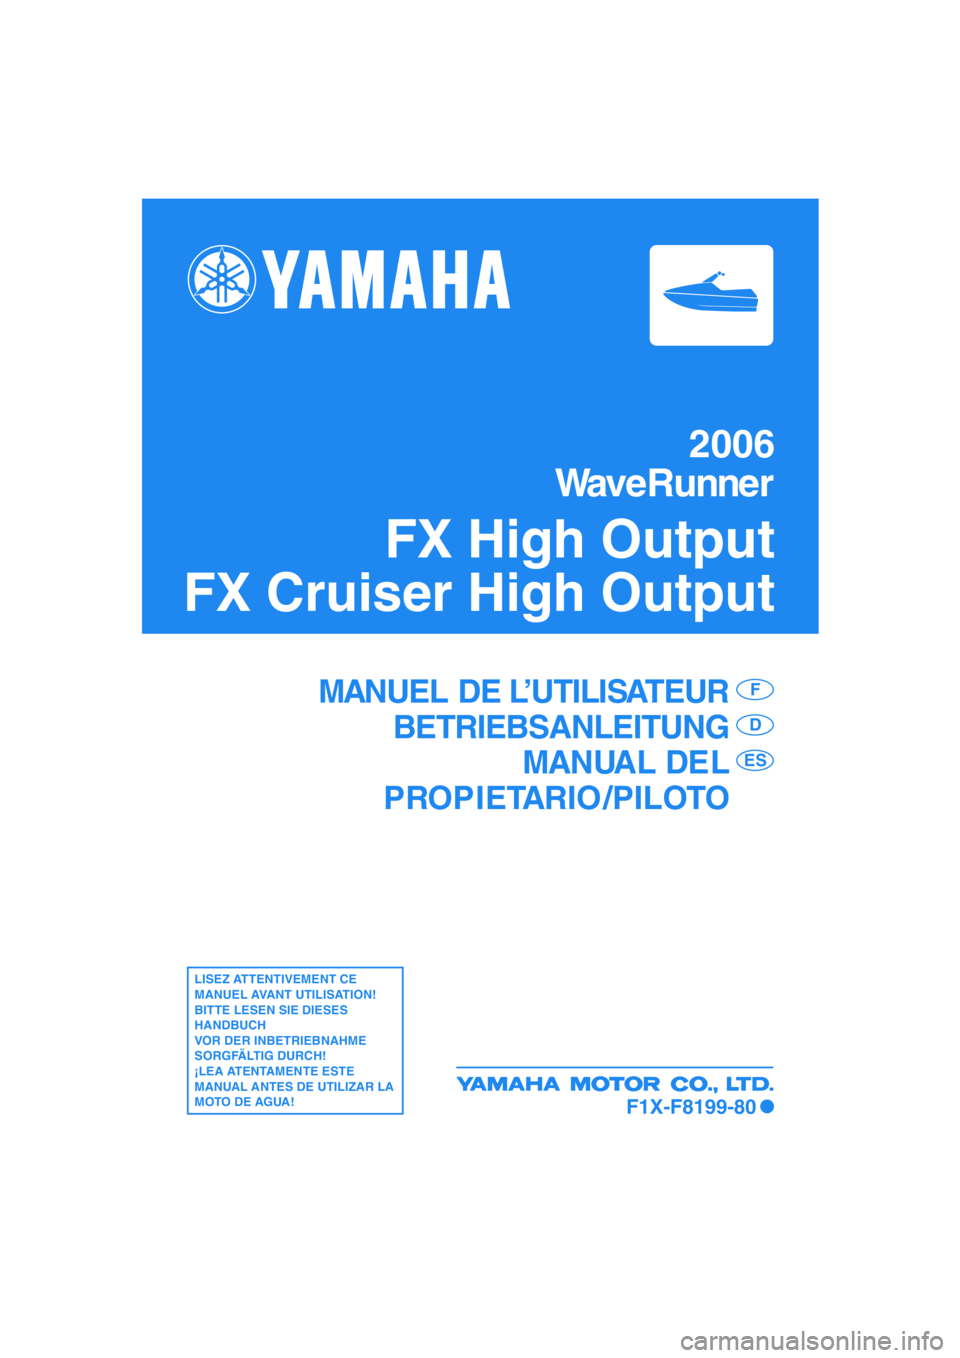 YAMAHA FX HO 2006  Manuale de Empleo (in Spanish) 2006
WaveRunner
FX High Output
FX Cruiser High Output
MANUEL DE L’UTILISATEUR
BETRIEBSANLEITUNG
MANUAL DEL
PROPIETARIO /PILOTOF
D
ES
LISEZ ATTENTIVEMENT CE 
MANUEL AVANT UTILISATION!
BITTE LESEN SIE